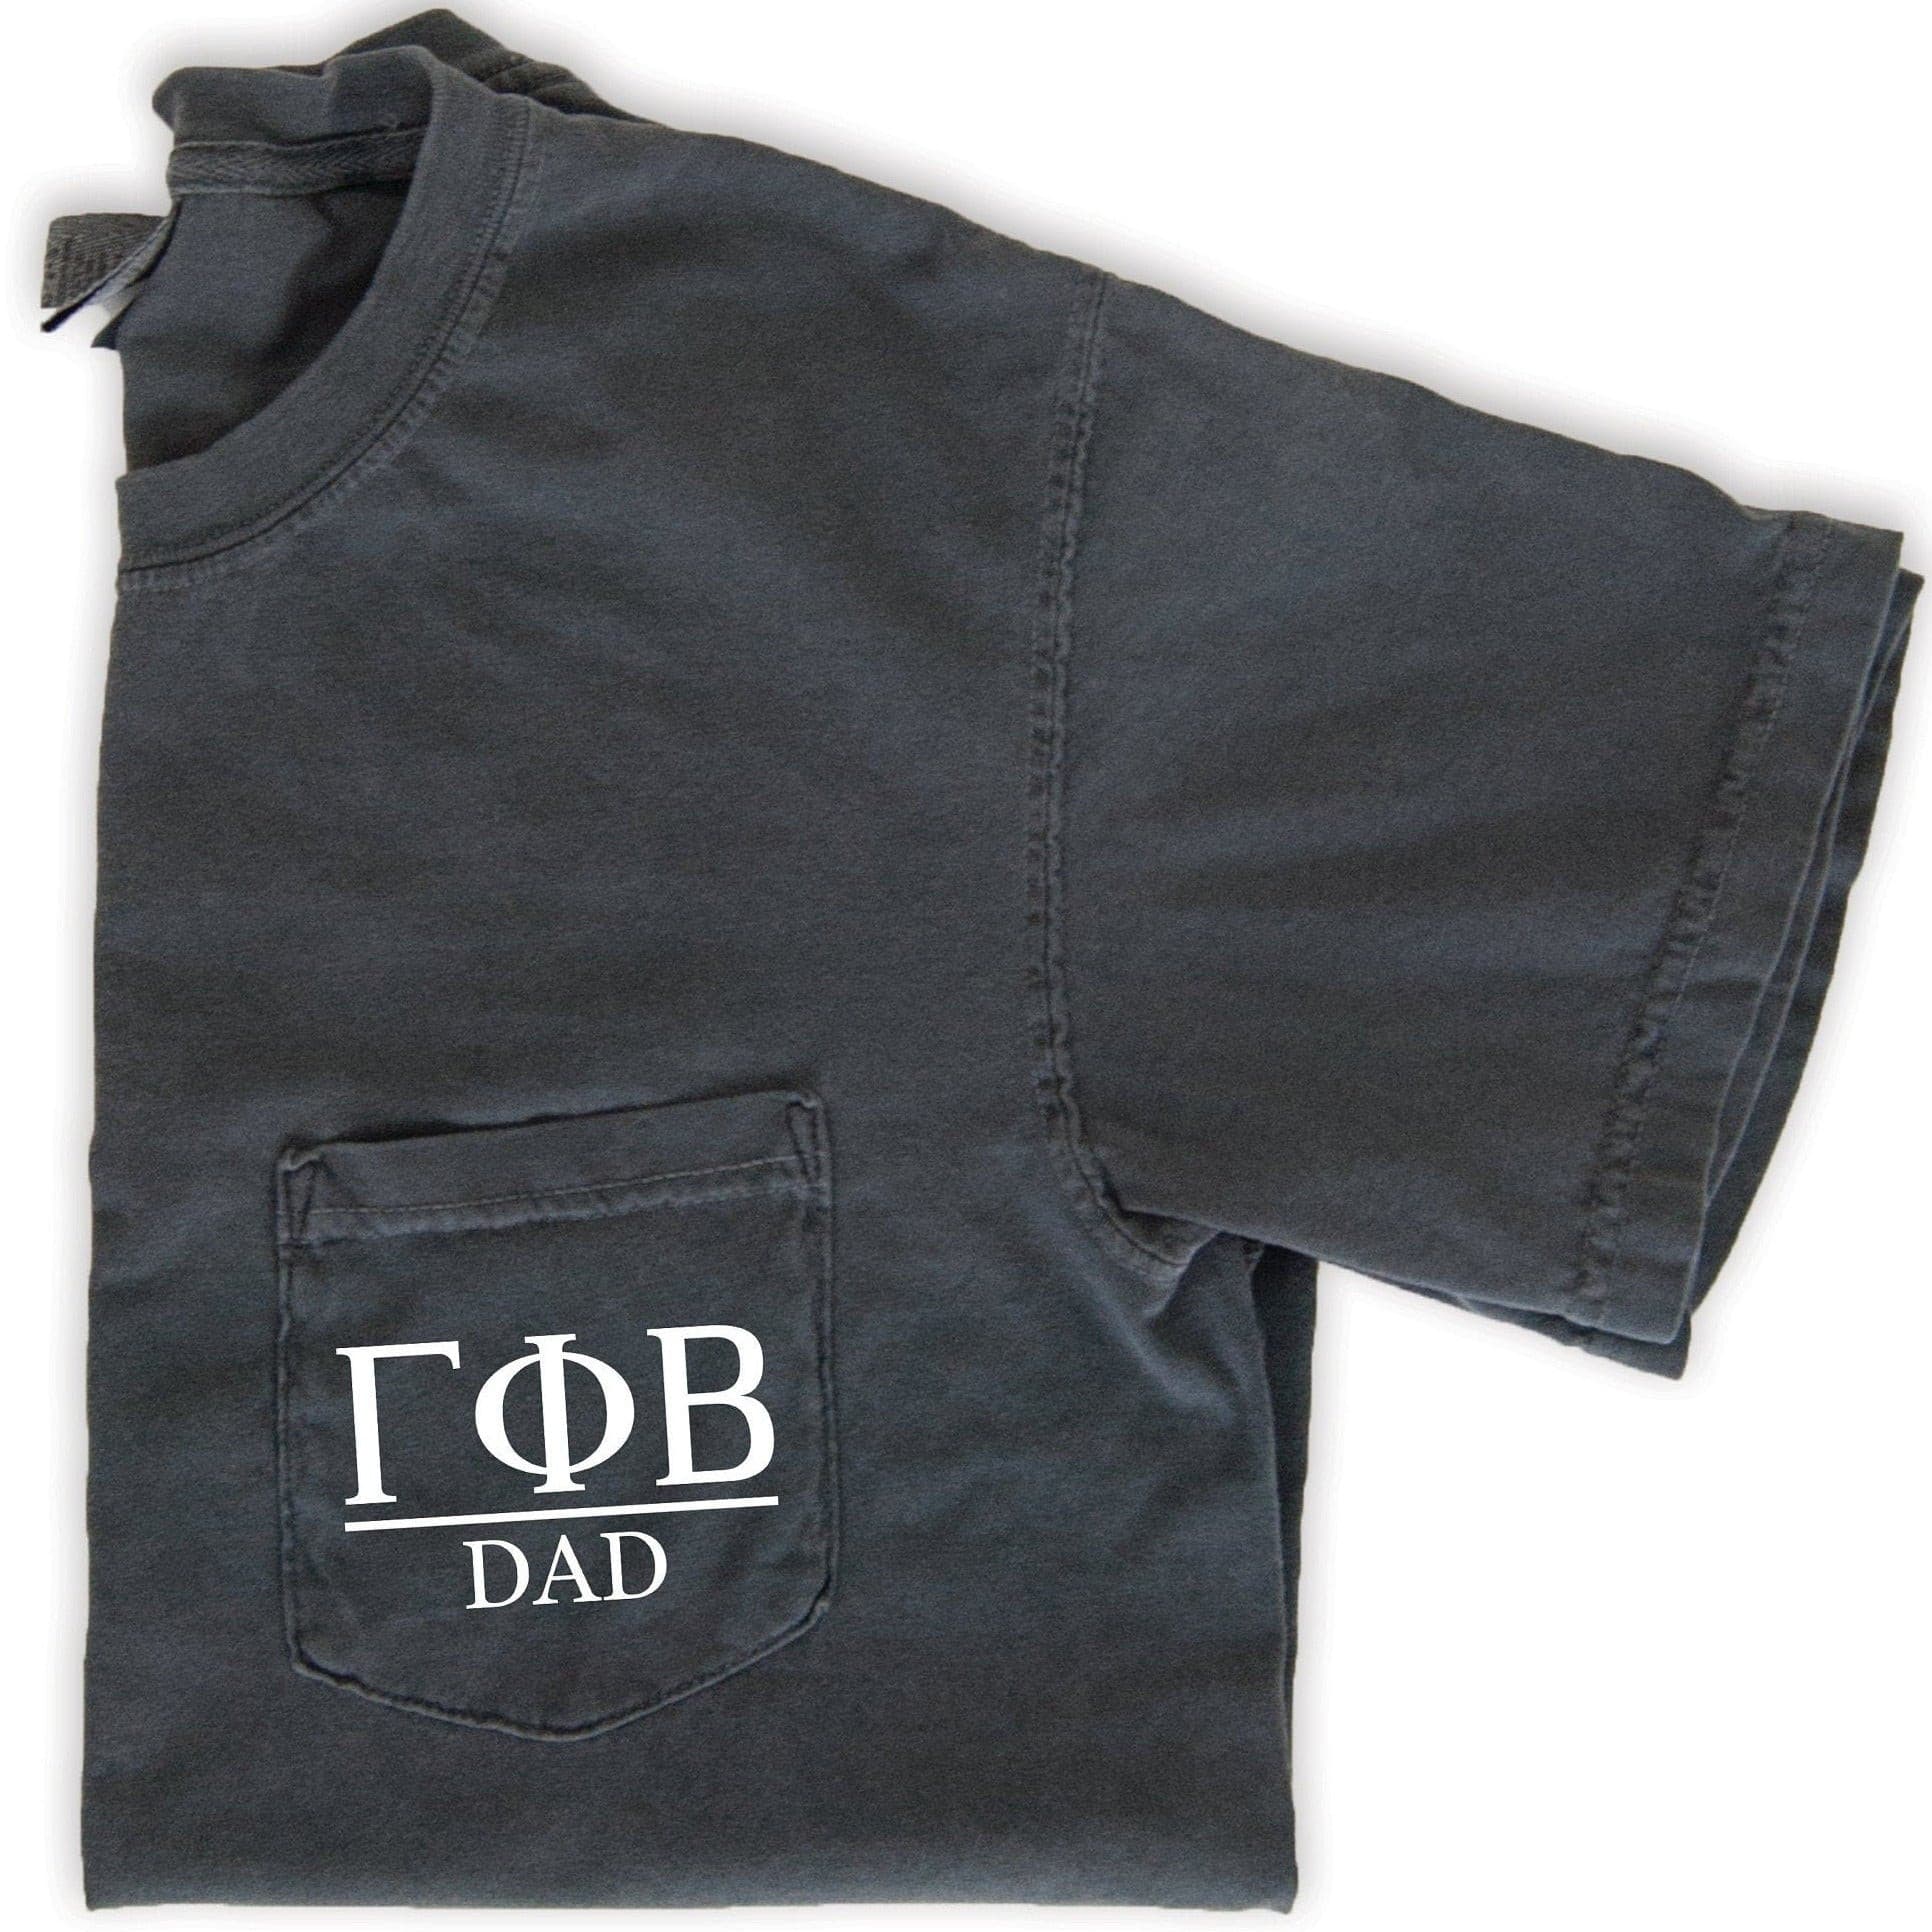 Gamma Phi Beta Dad T-Shirt - Grey - Go Greek Chic